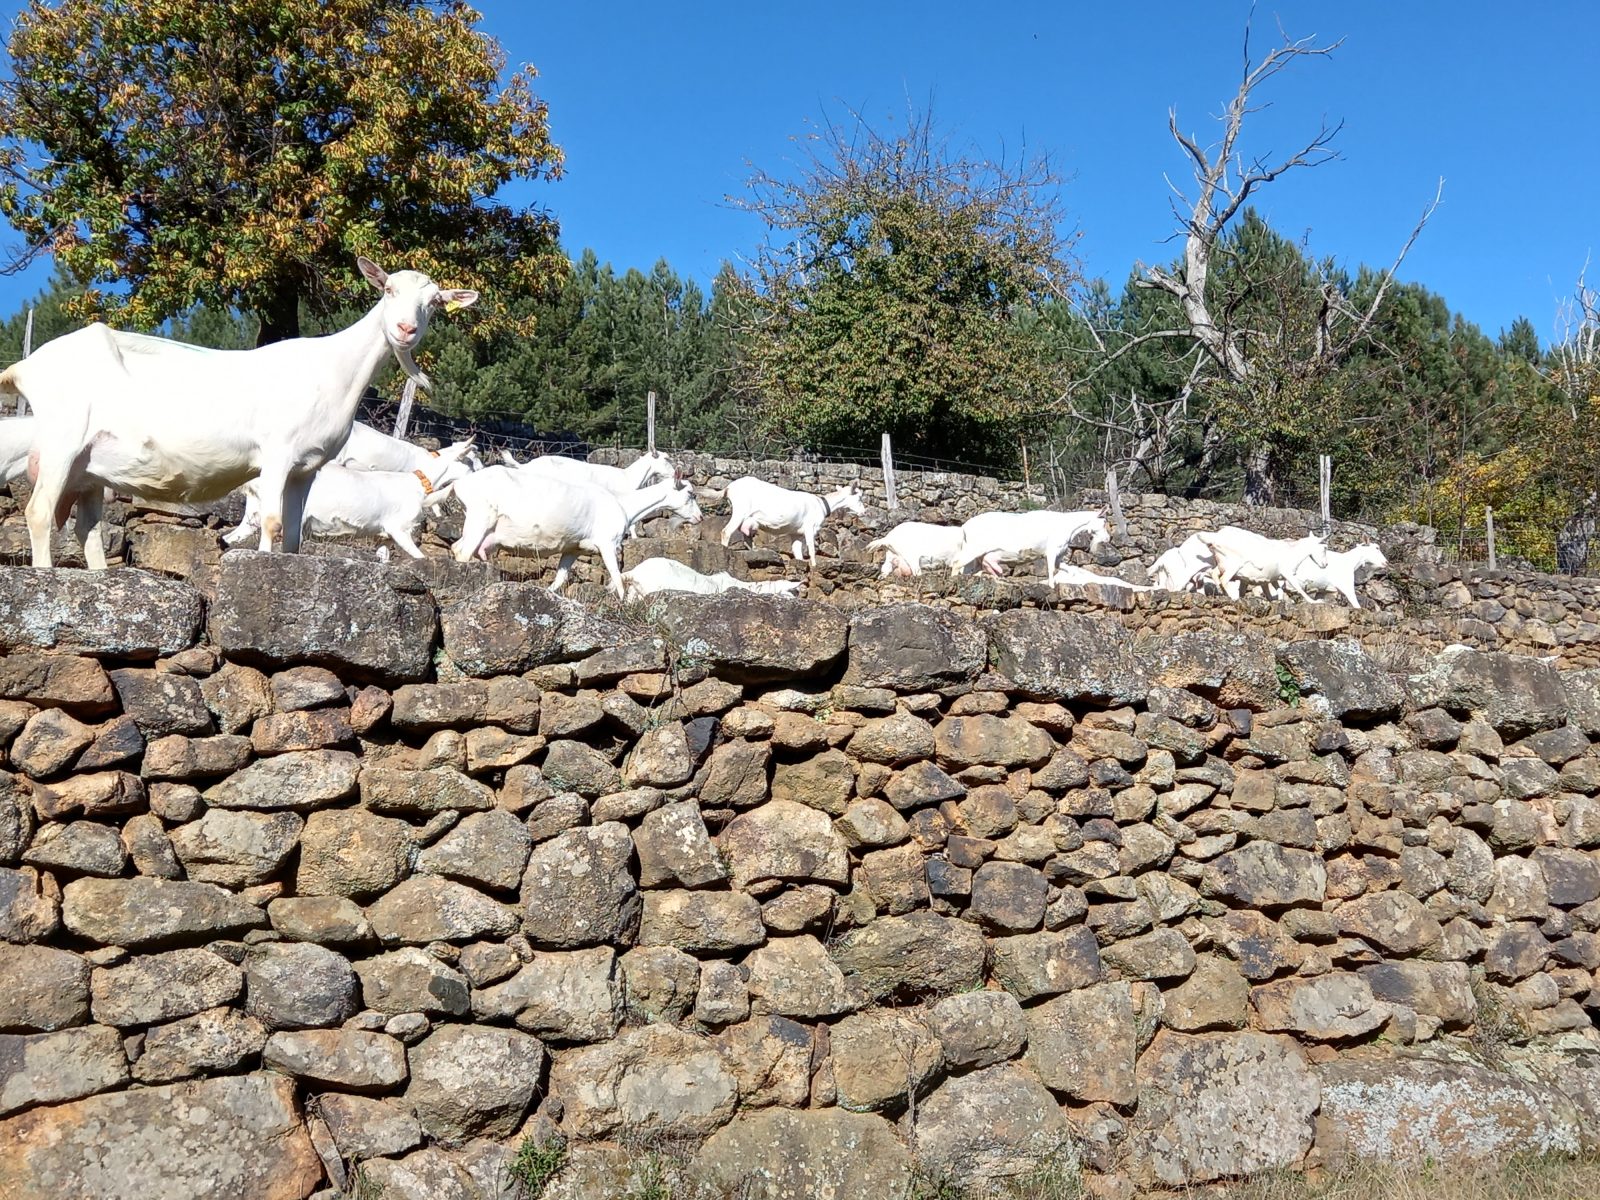 Visit of the goat farm Le Serre